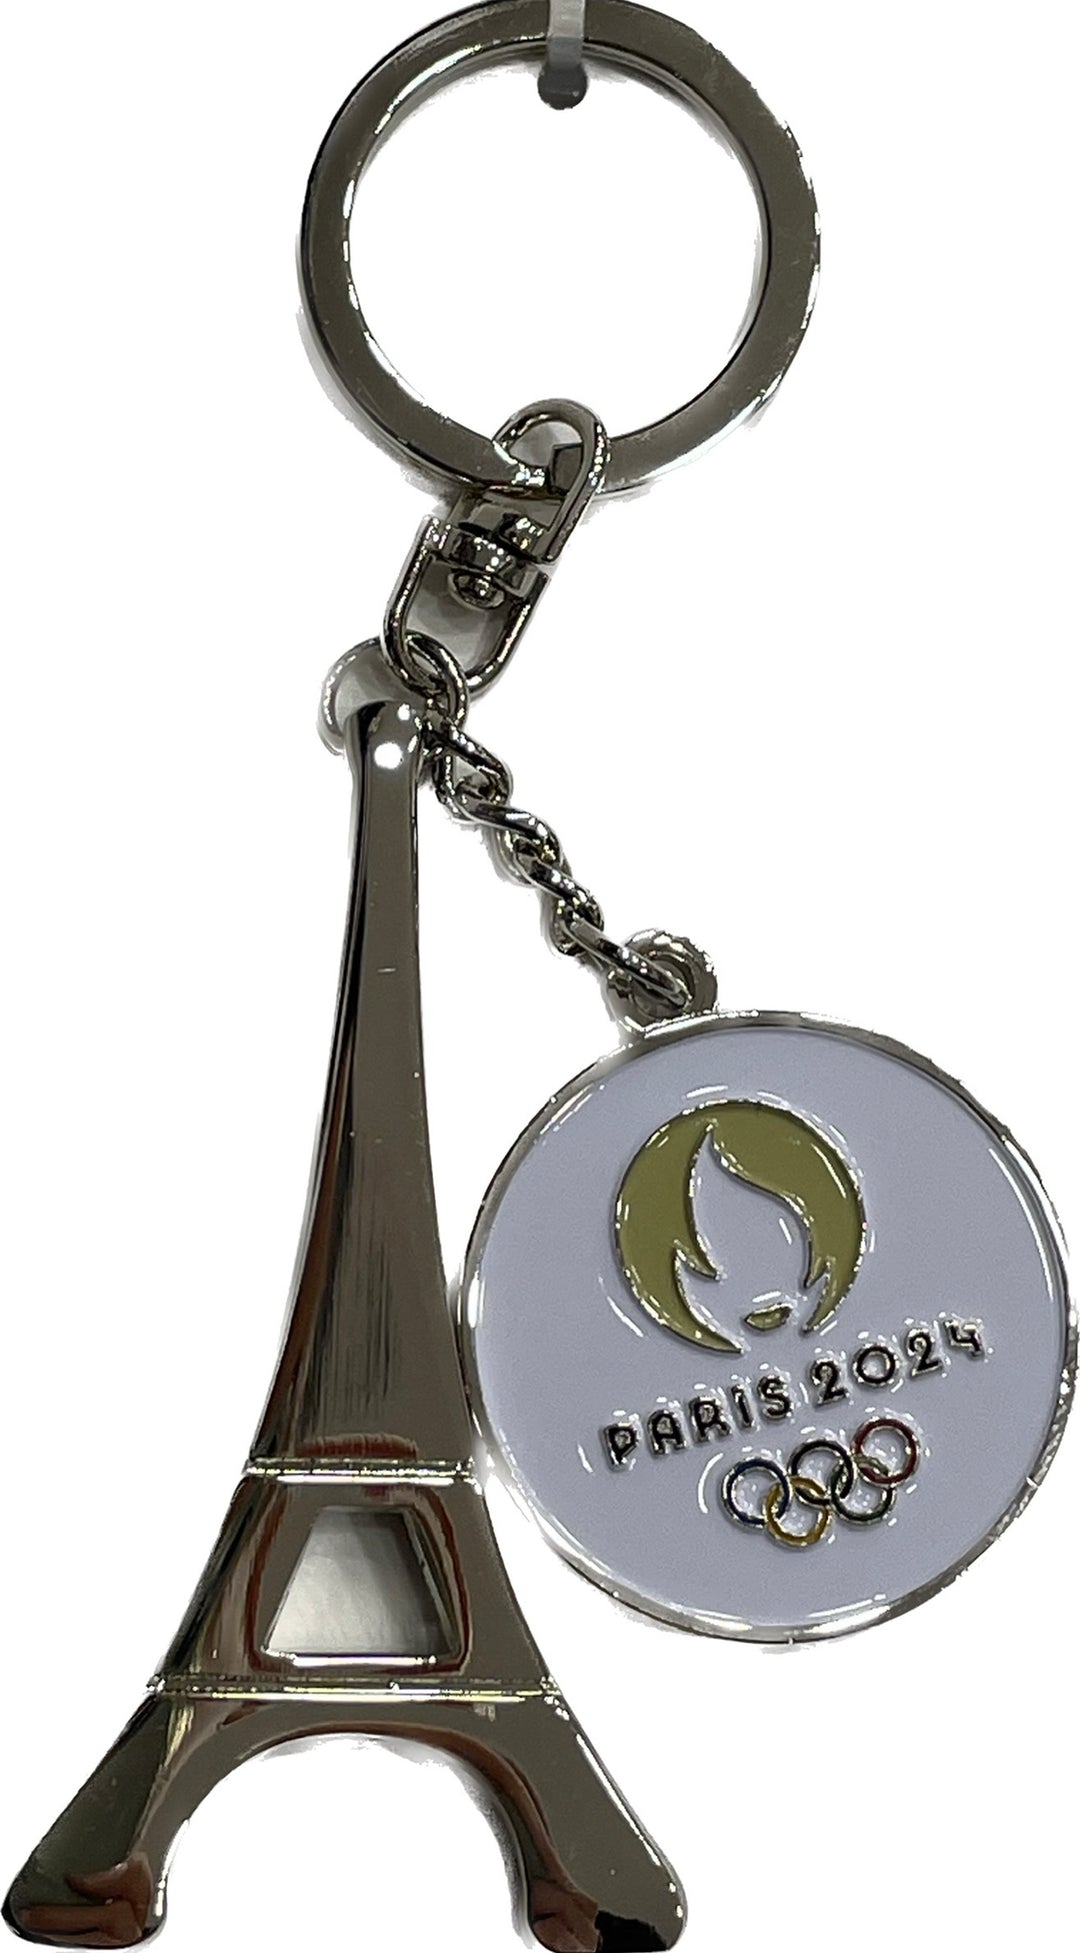 Porte-clés représentant la Tour Eiffel avec la flamme olympique pour Paris 2024, en métal argenté.